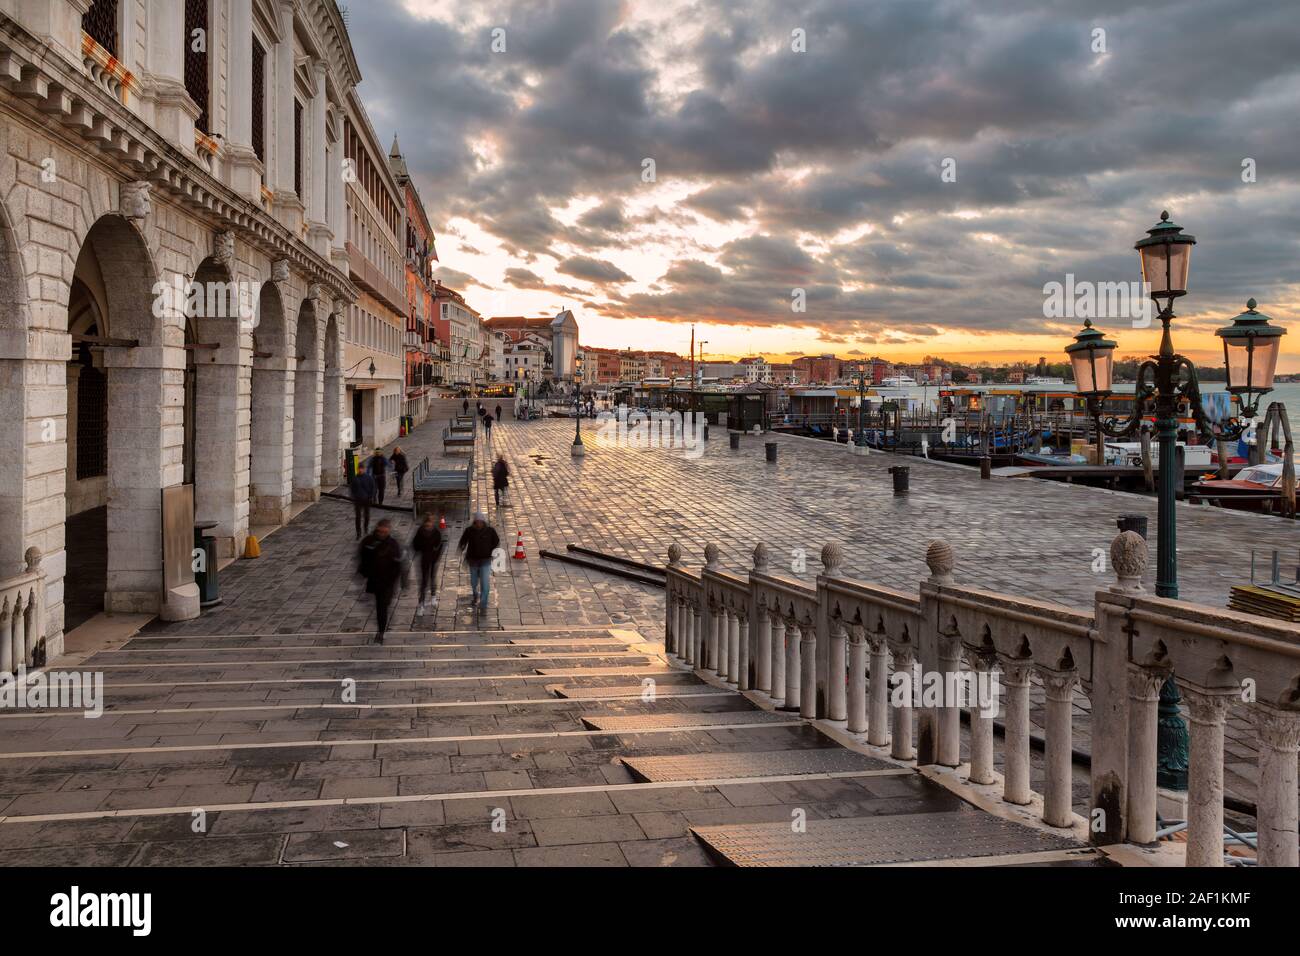 Early morning near San Marco, Venice, Italy. Stock Photo